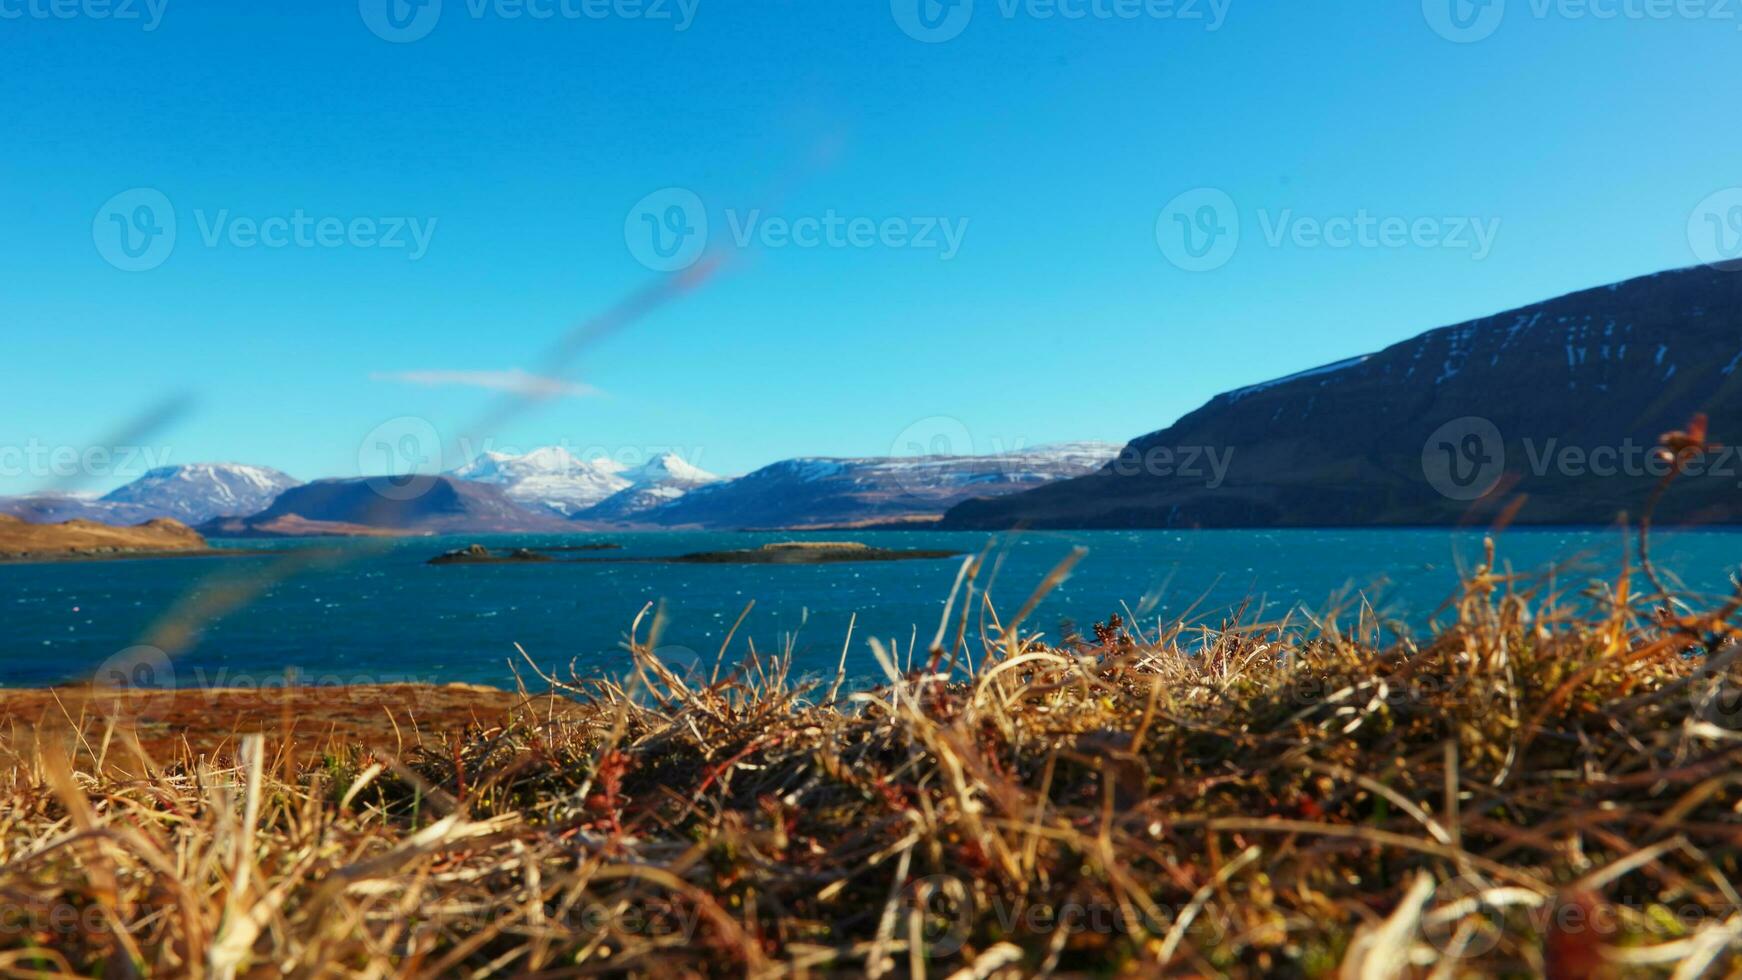 vistoso islandés paisaje con lago rodeado por Nevado montañas y sierras, hermosa congelado tierra. fantástico nórdico naturaleza formando paraíso paisaje con grande campos y agua. trípode disparo. foto